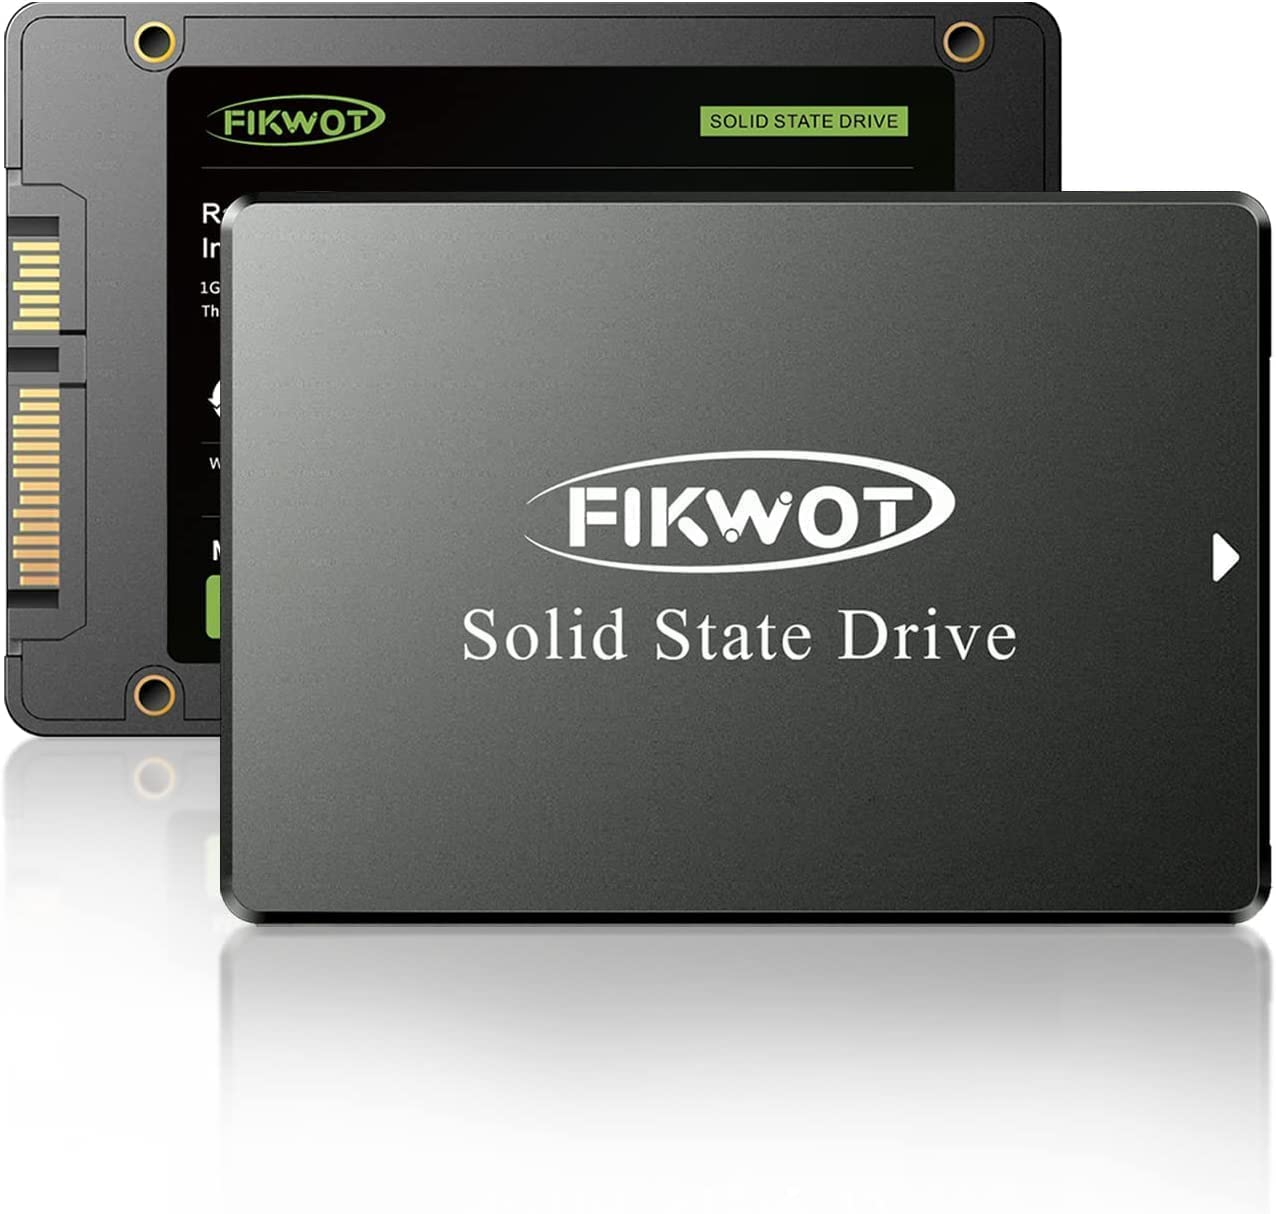 Fikwot FS810 2.5 Inch Internal SSD - SATA III 6Gb/s